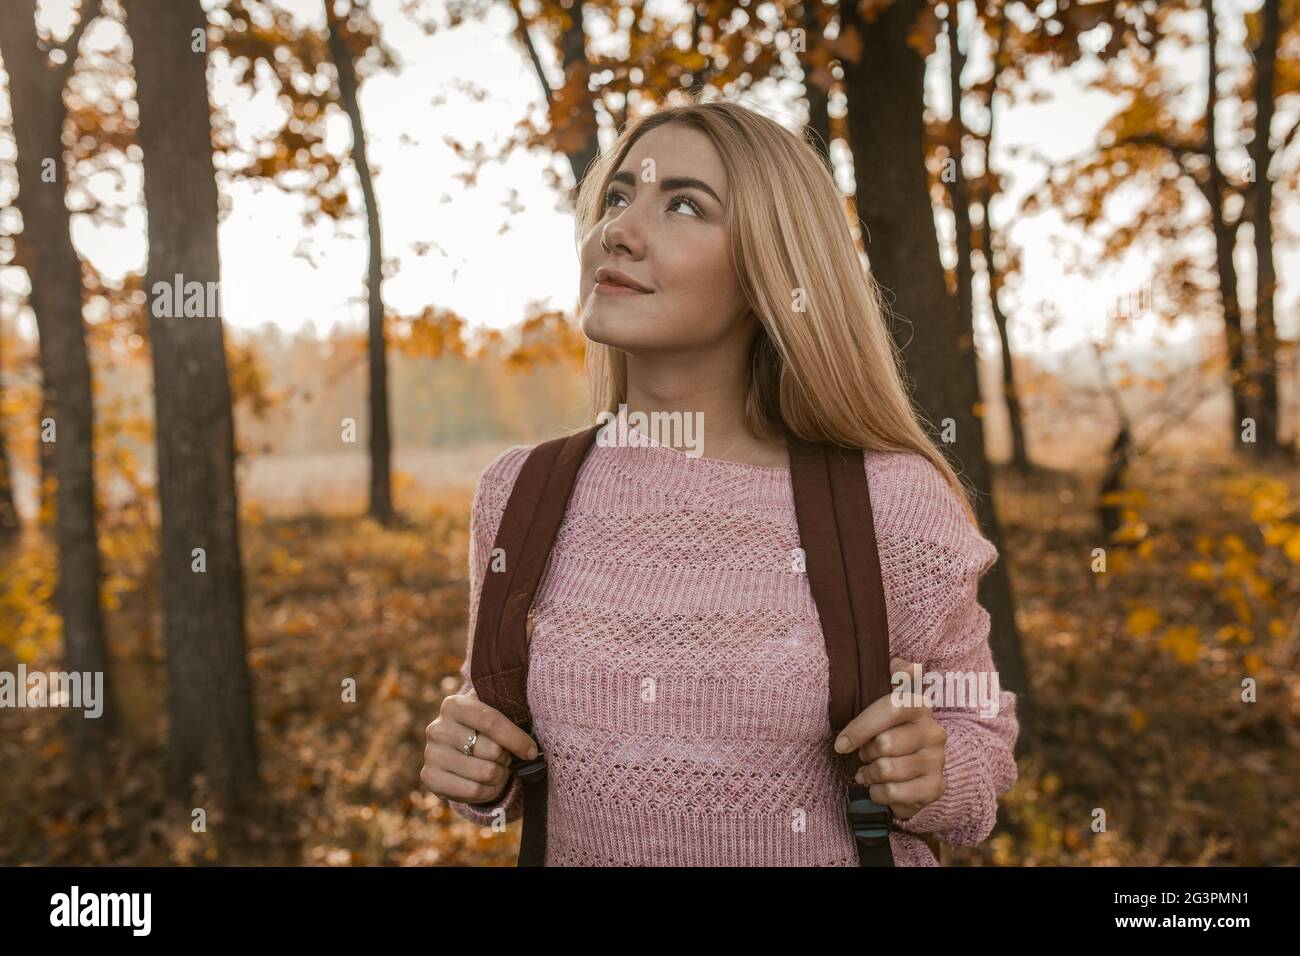 La viaggiatore femminile ammira la bellezza della foresta d'autunno Foto Stock